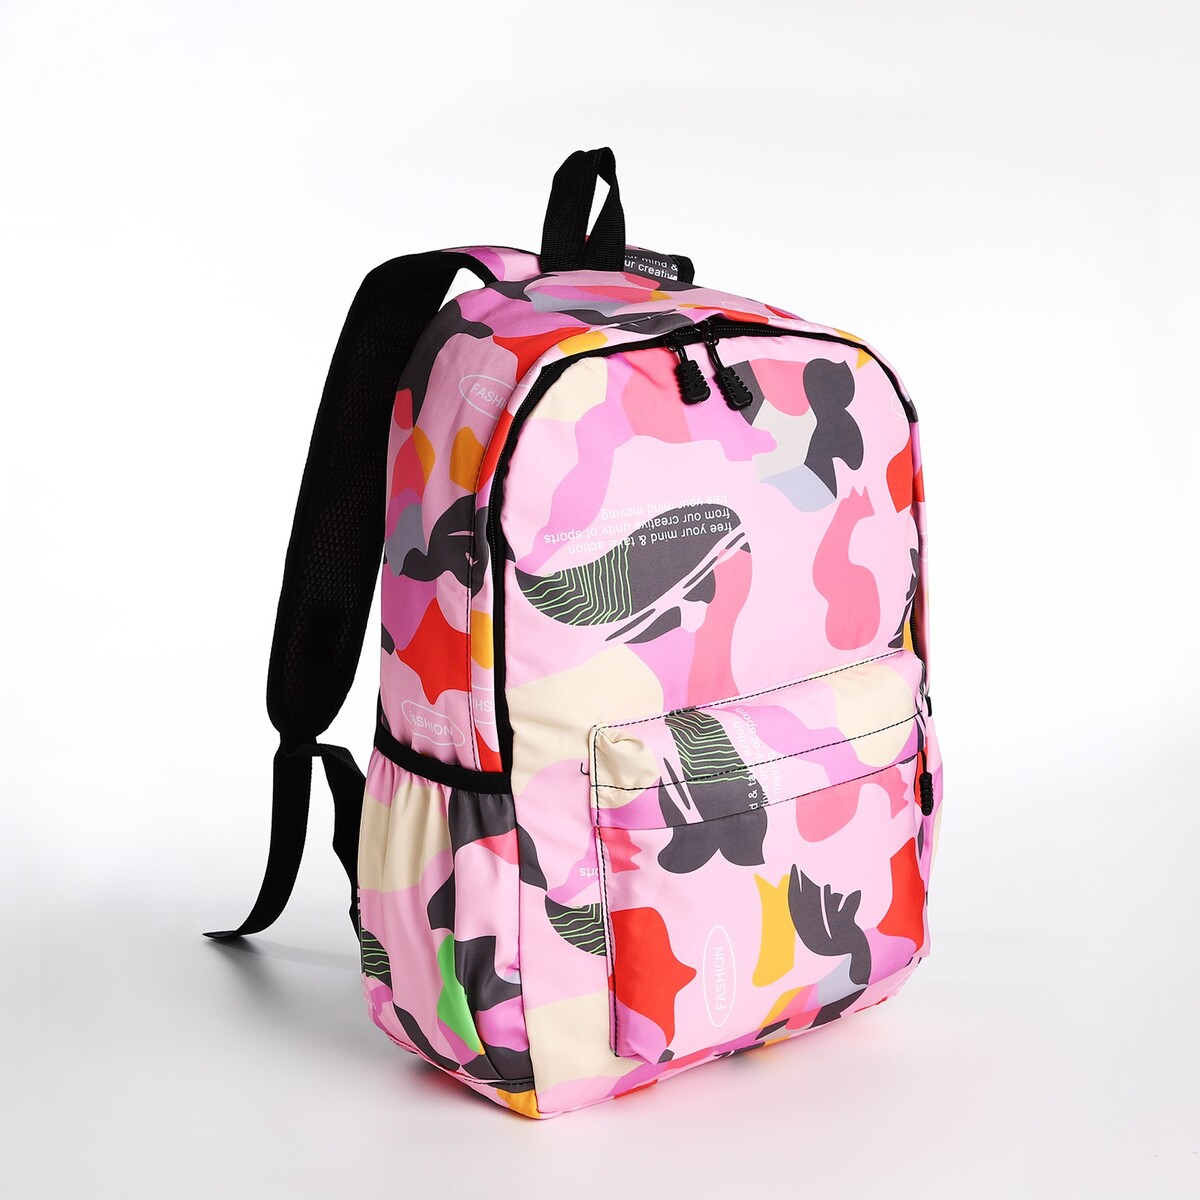 Рюкзак молодежный из текстиля, 3 кармана, цвет розовый рюкзак молодежный из текстиля 4 кармана белый розовый